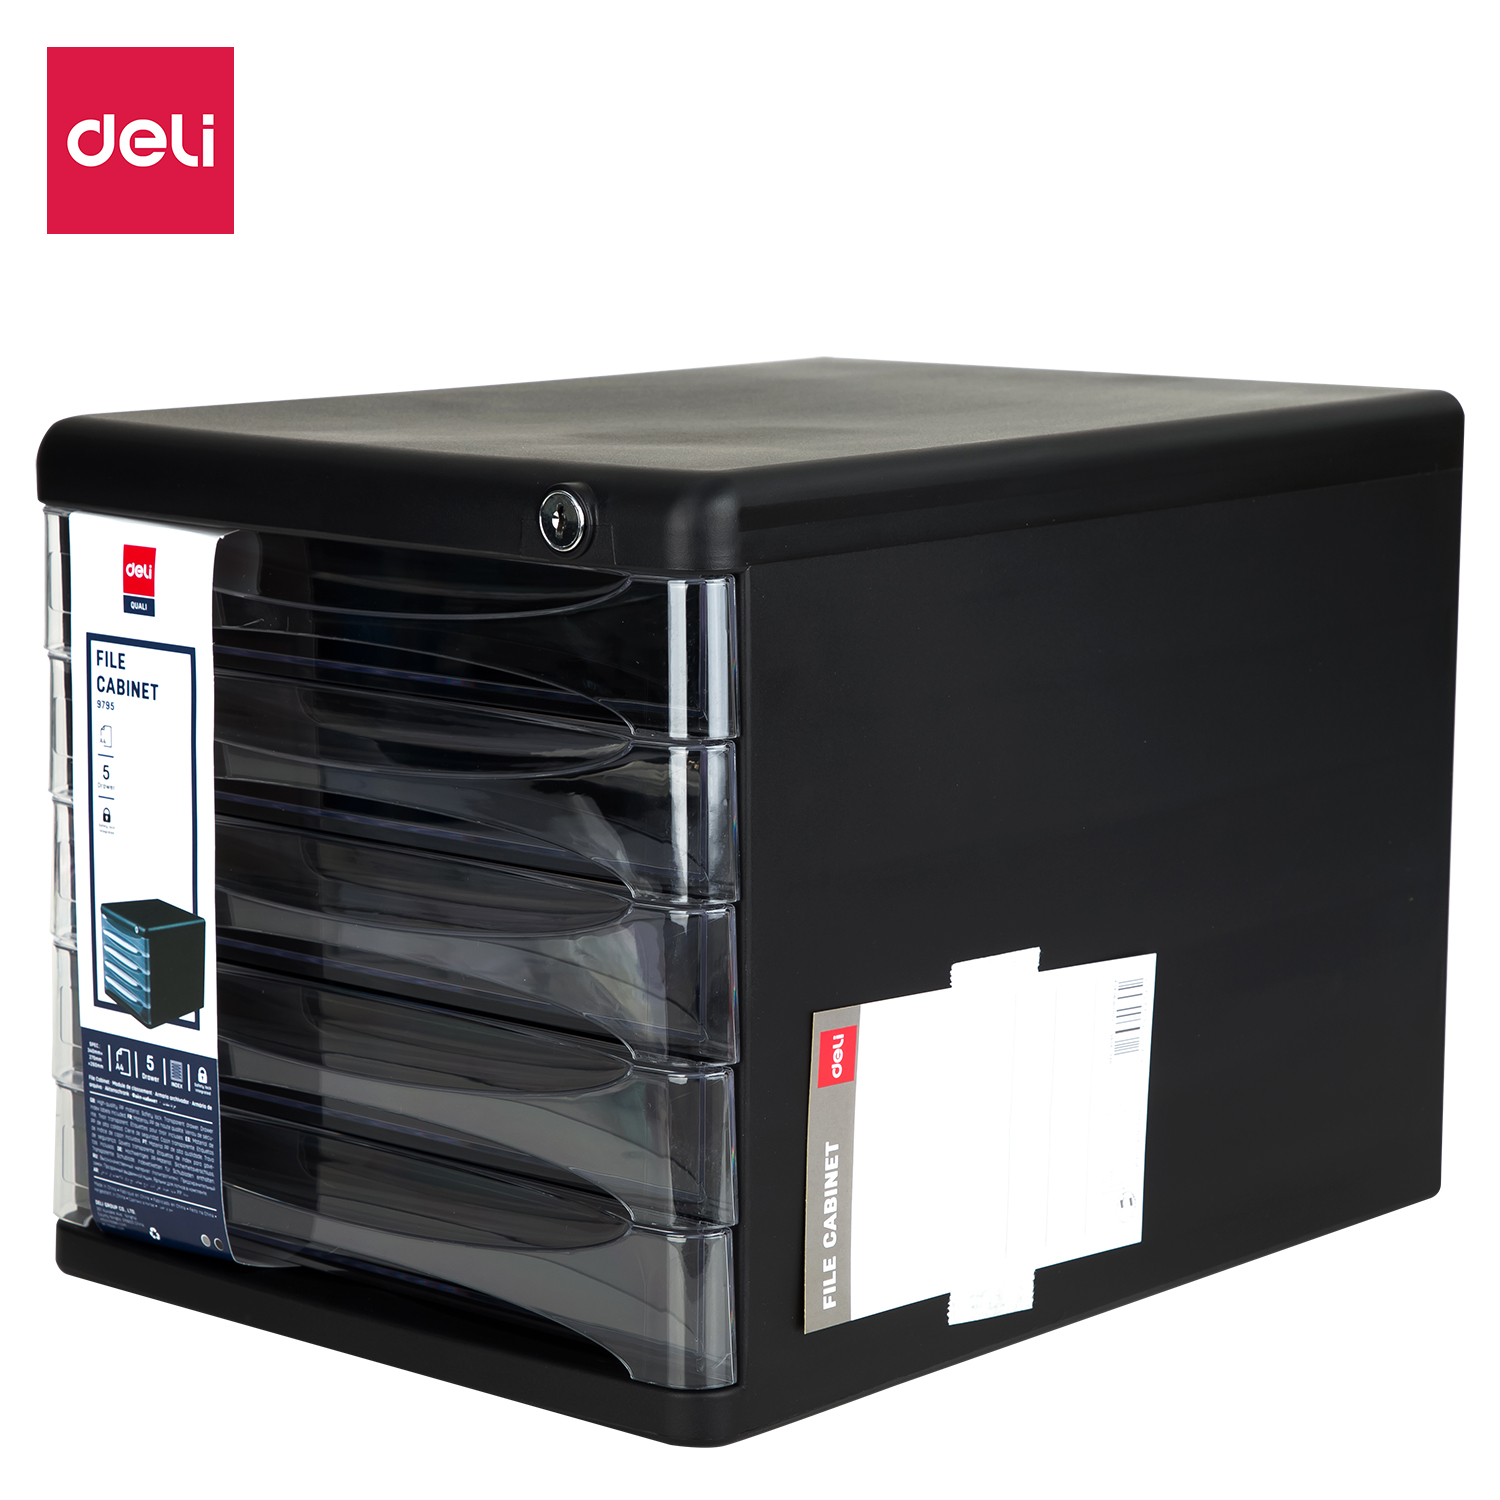 Deli-E9795 File Cabinet